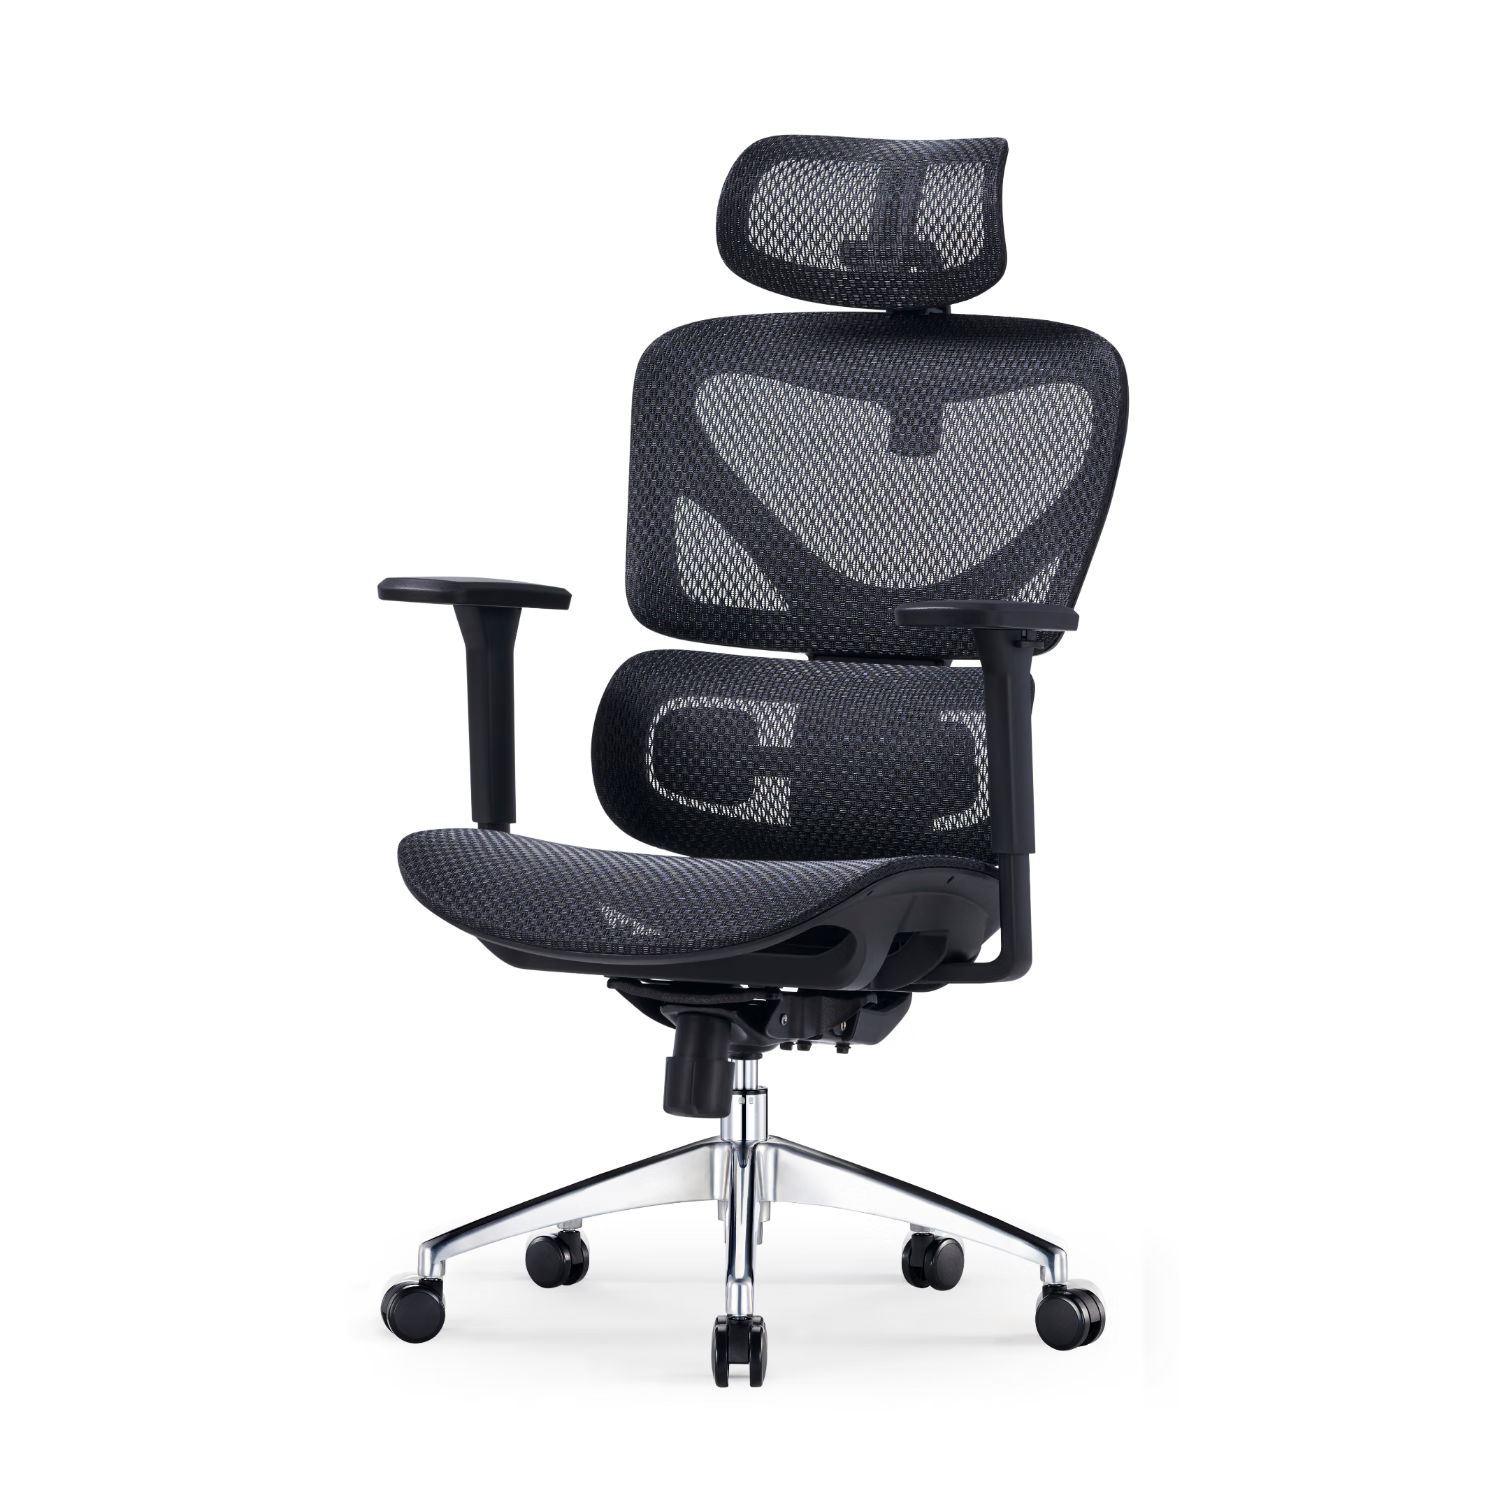 支家1606X 限量款 喜马拉雅人体工学椅 奢华双层网老板椅电脑椅办公椅 黑色双层纳米网 360°扶手+线控